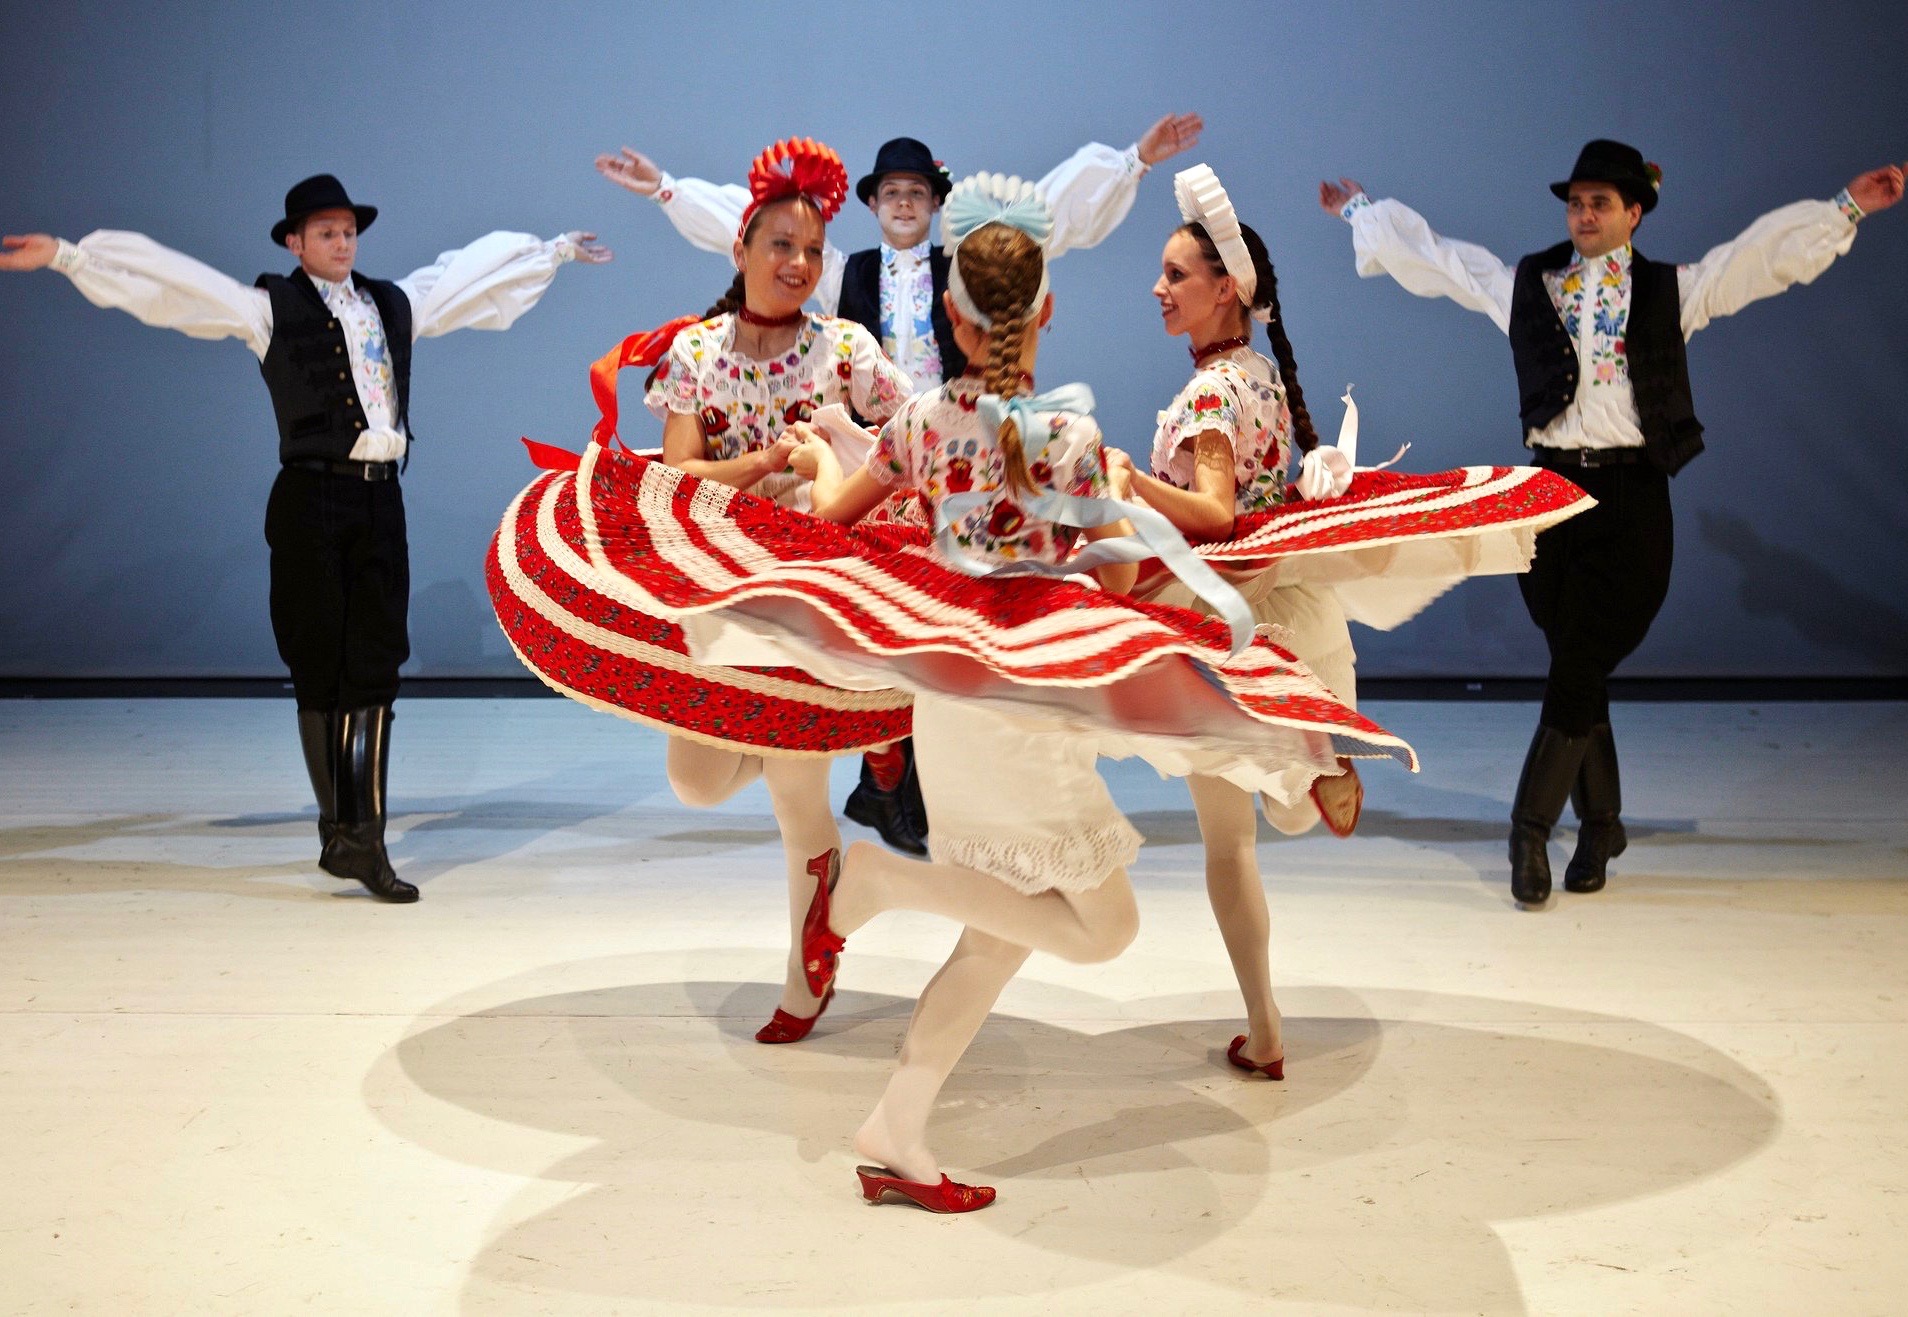 Bailarines folclóricos húngaros vestidos con trajes de colores que bailan una danza tradicional.